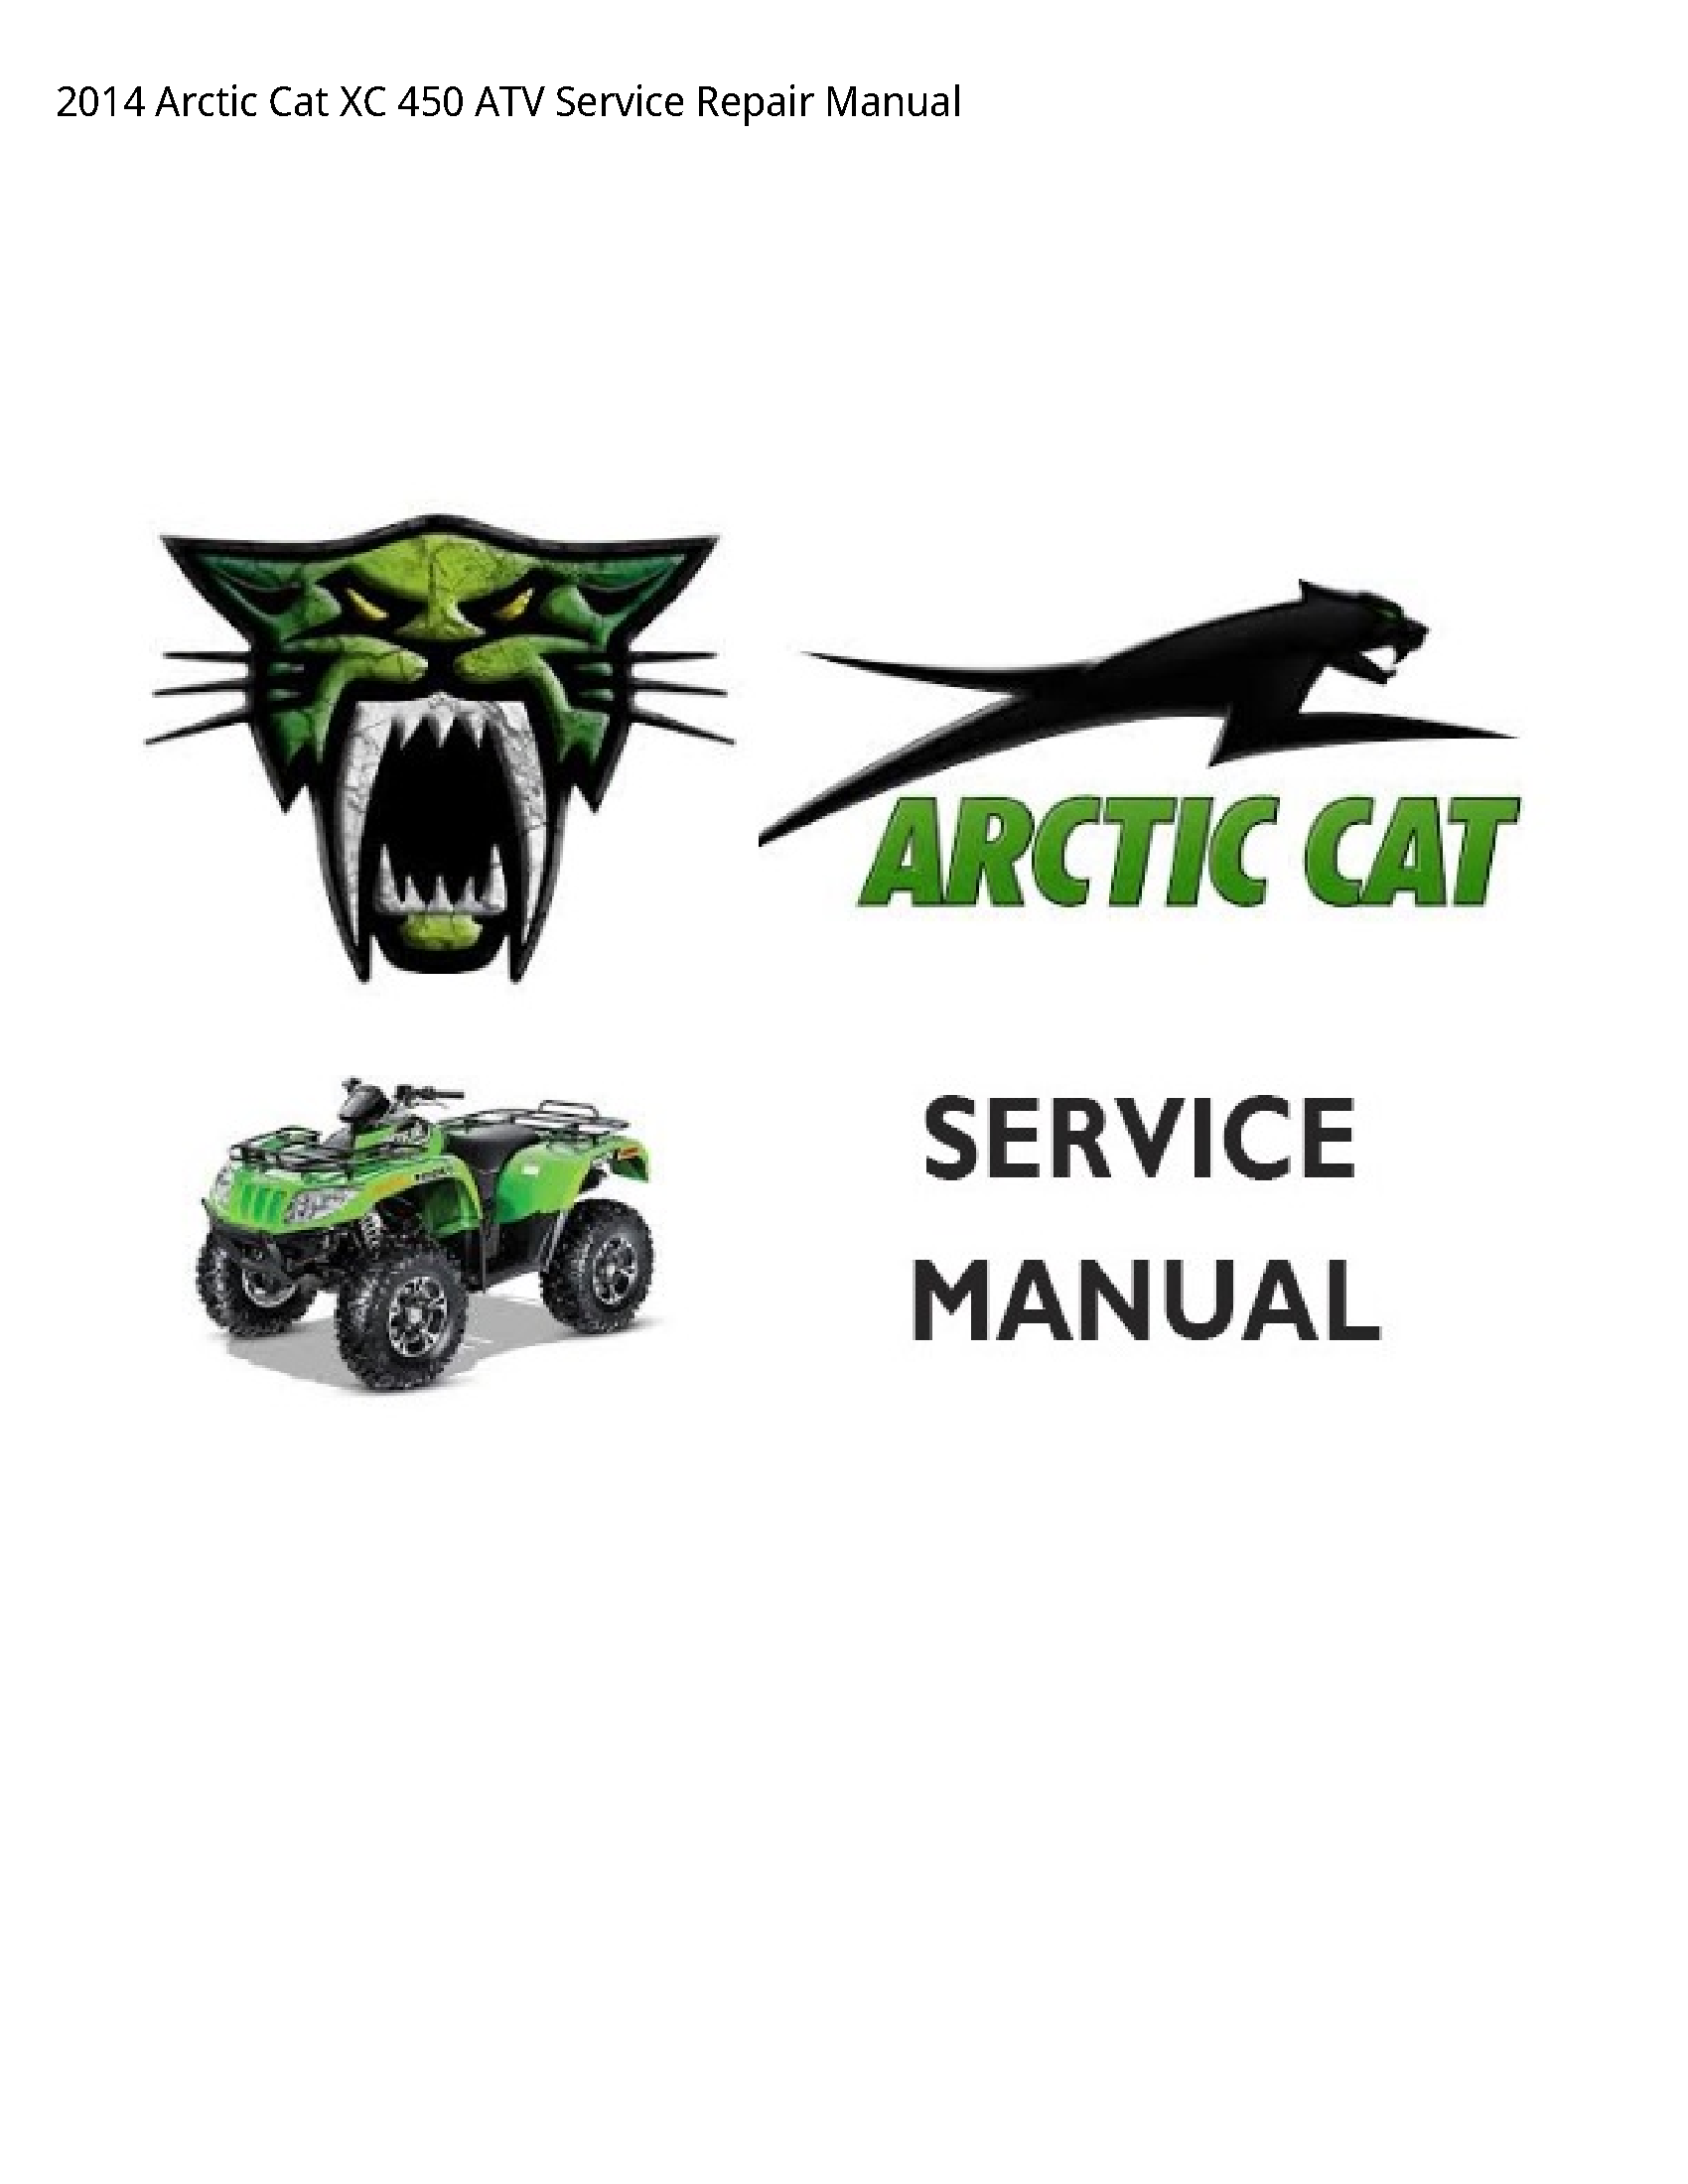 Arctic Cat 450 XC ATV manual